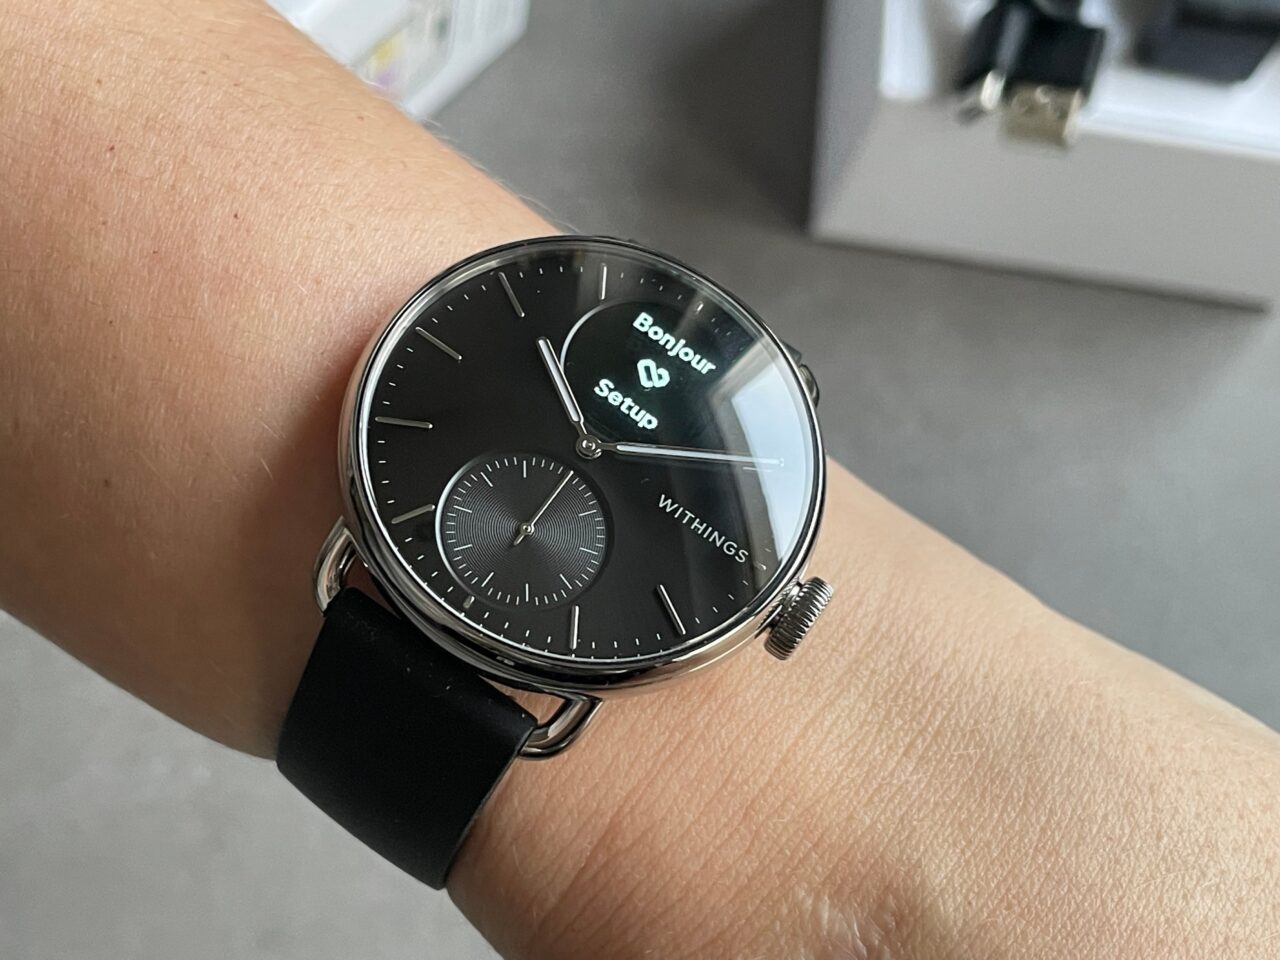 Smartwatch z czarnym paskiem na nadgarstku osoby, wyświetlający czas i powiadomienie z napisem "Bonjour".